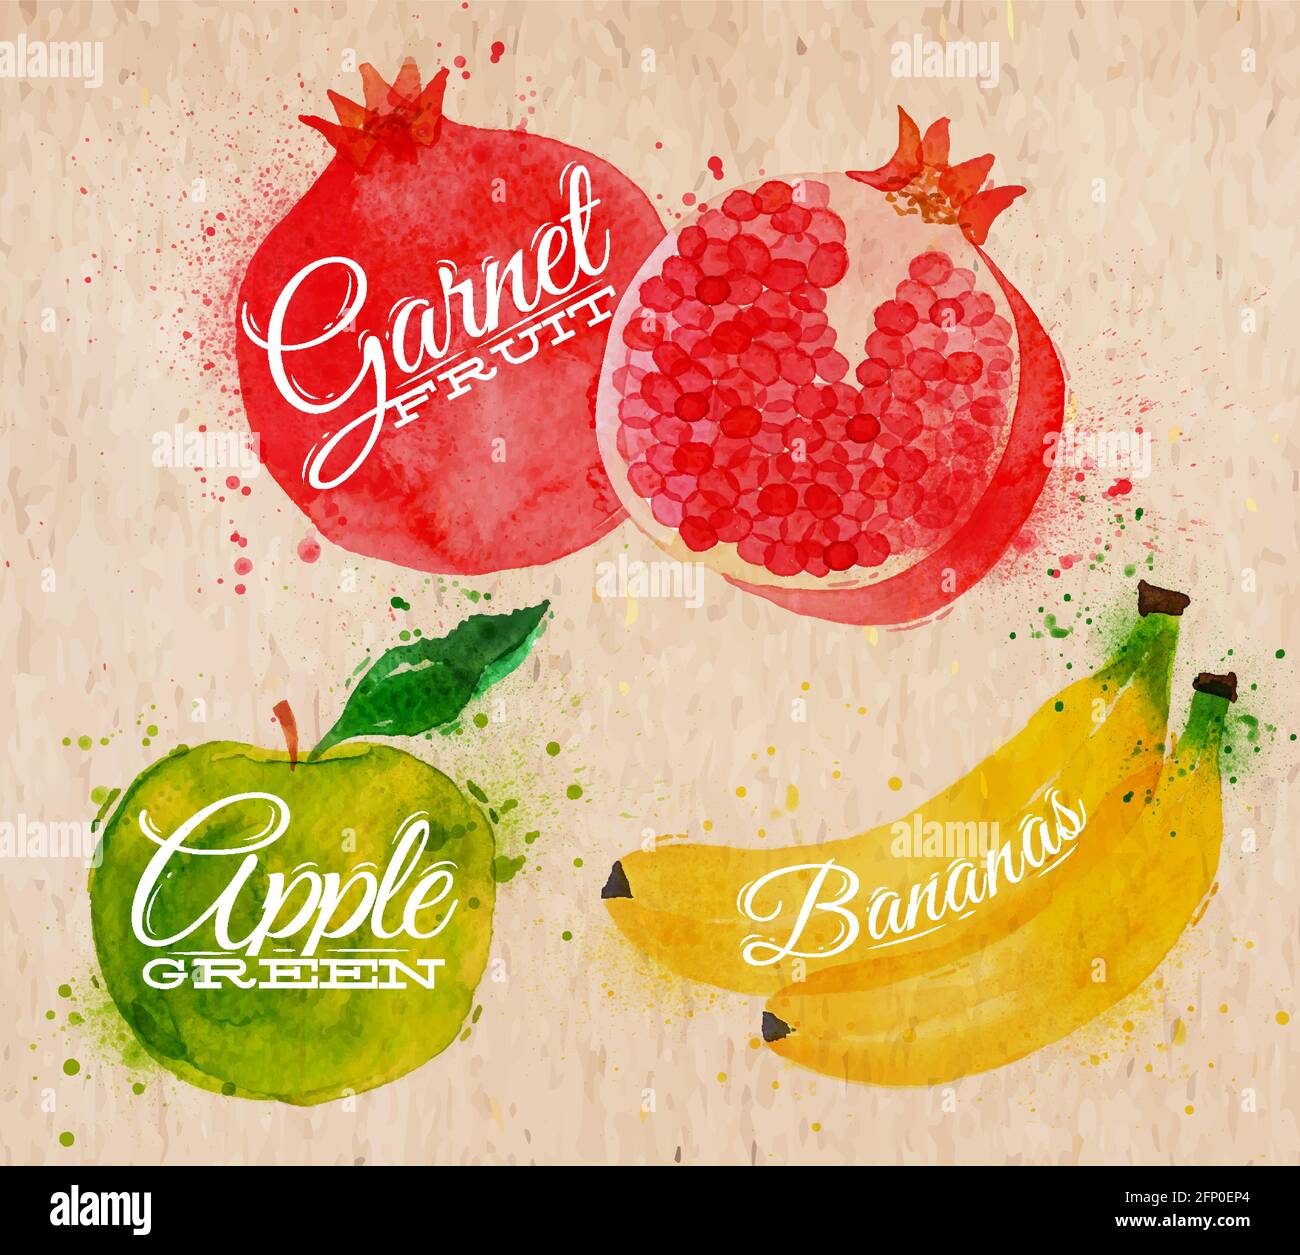 Obst-Set gezeichnet Aquarell Flecken und Flecken mit einem Spray Banane, Granatapfel, Apfelgrün in Kraft Stock Vektor